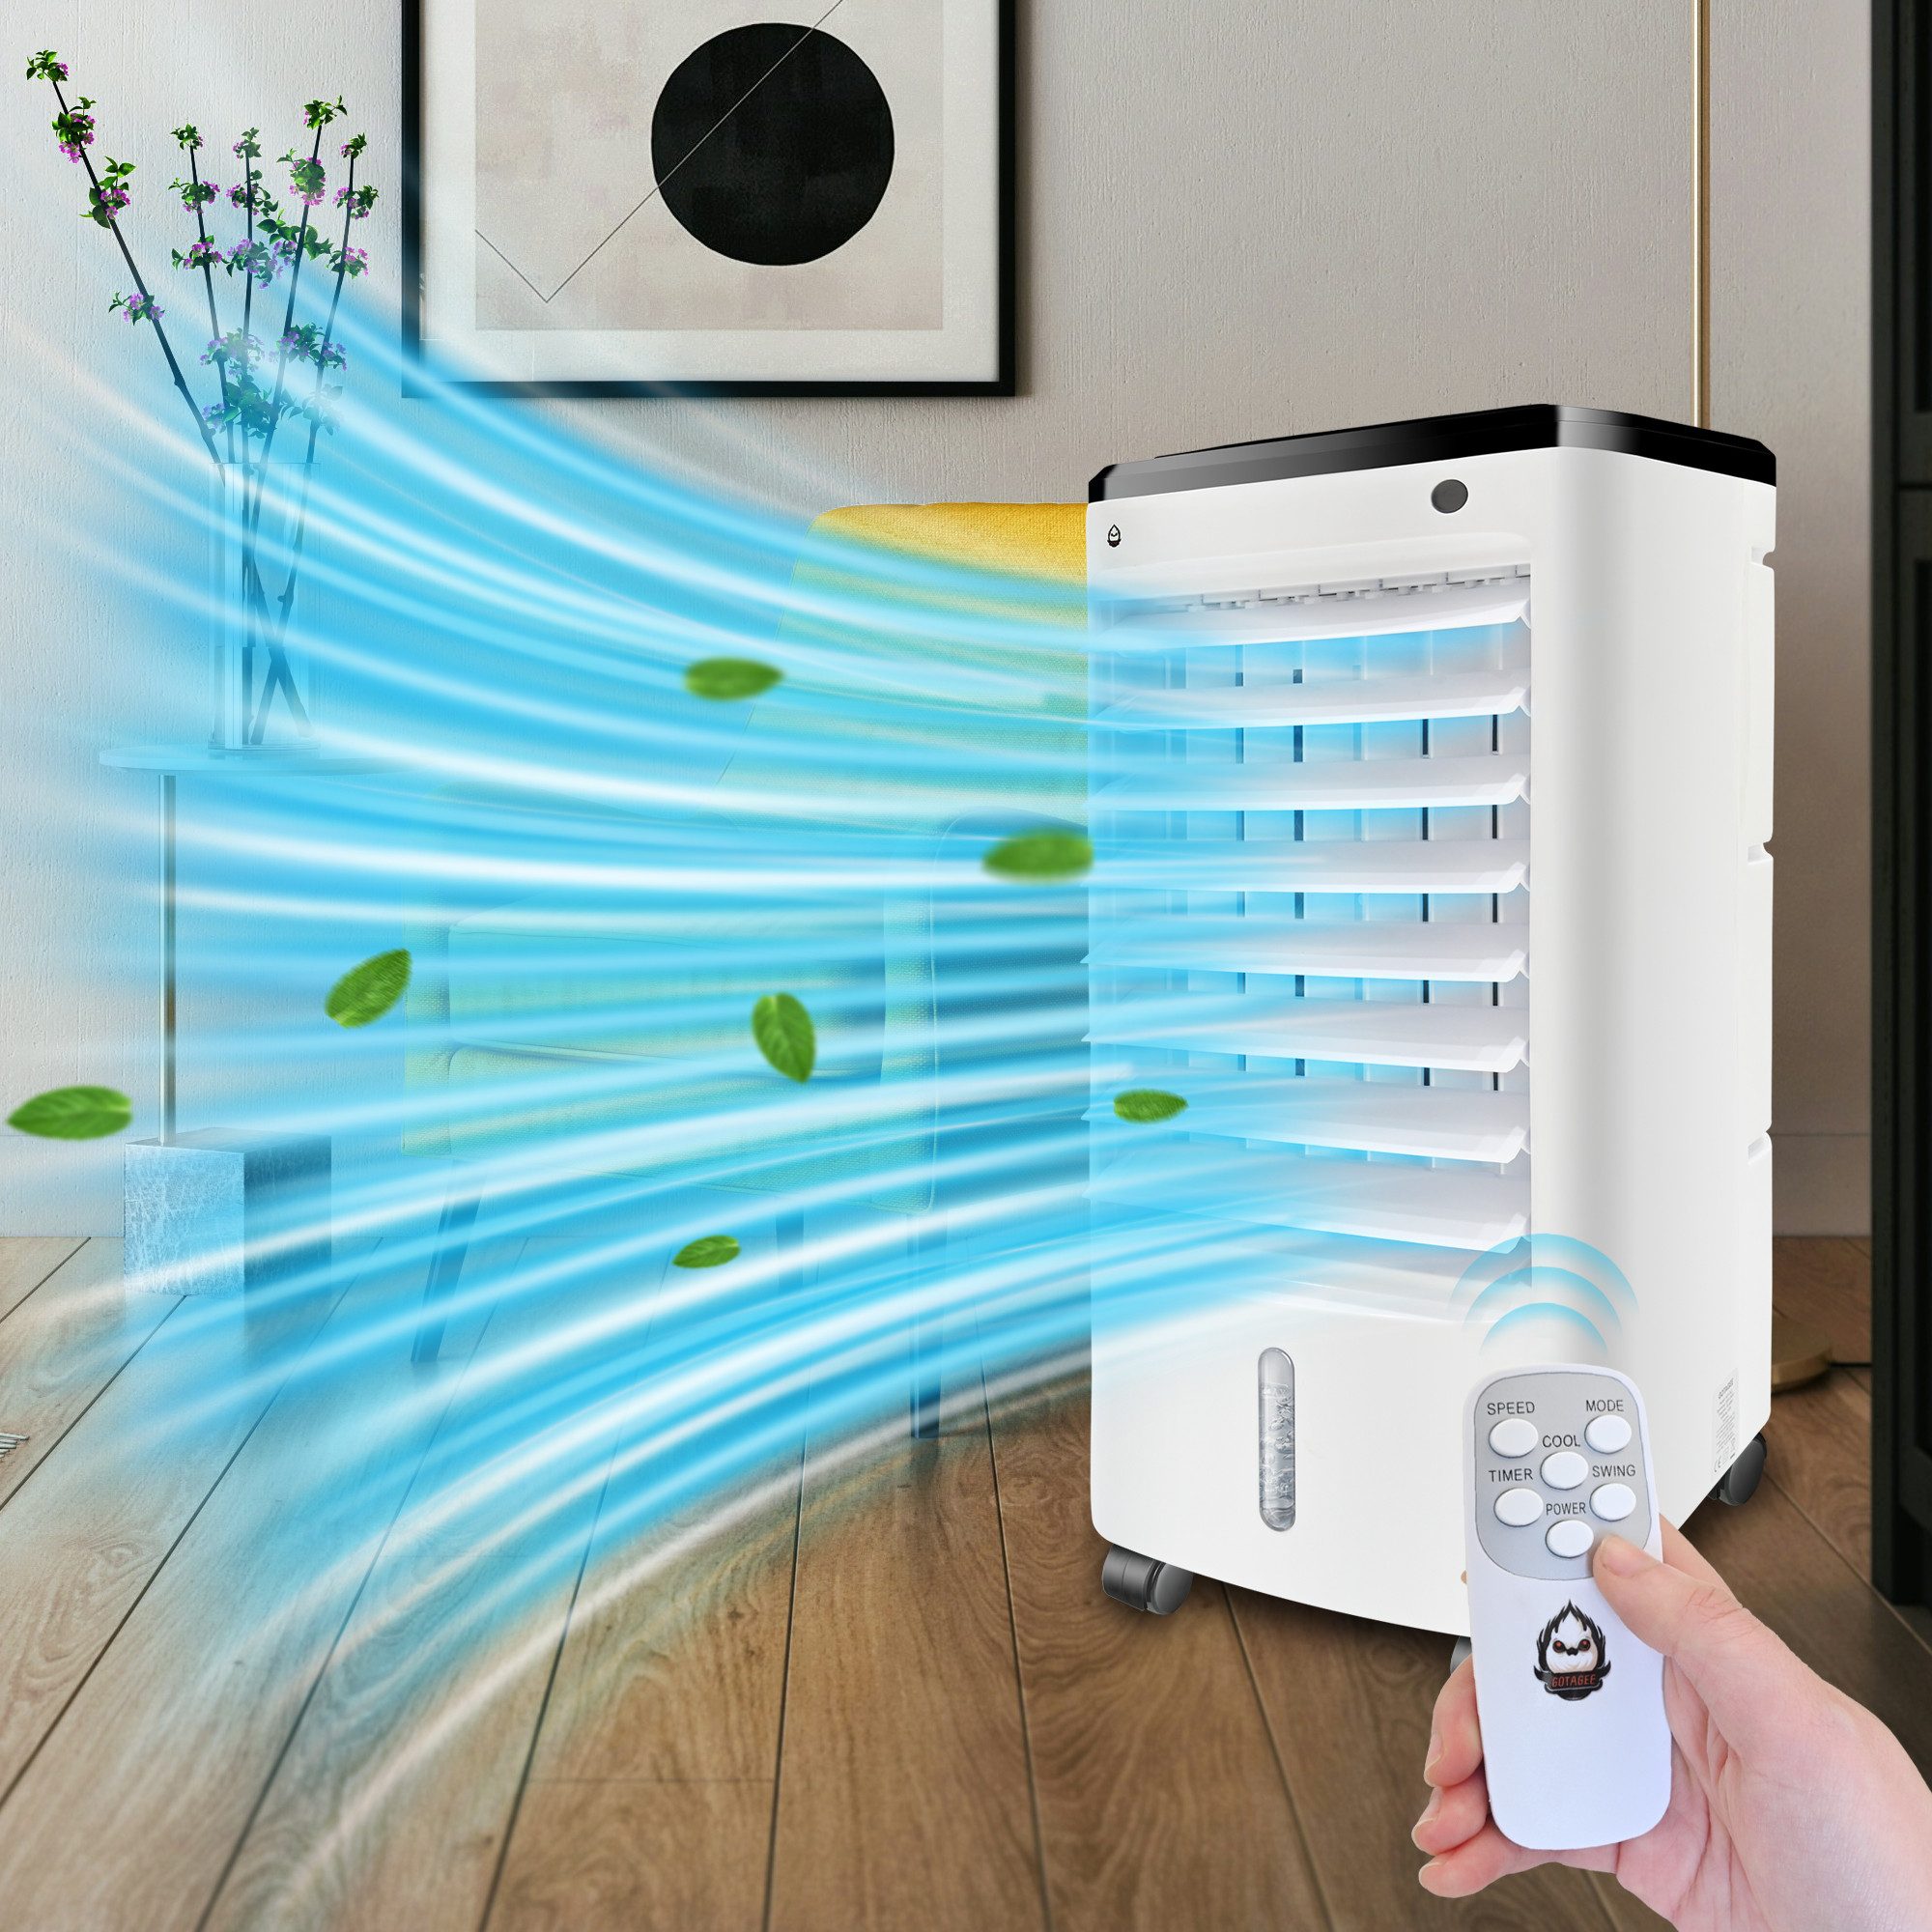 Docrooup Luftkühler Mobiles Klimagerät Luftkühler,65W, 3 Geschwindigkeiten, Touchscreen, mit 4 Rädern, Maße 29x26x56cm, mit Fernbedienung